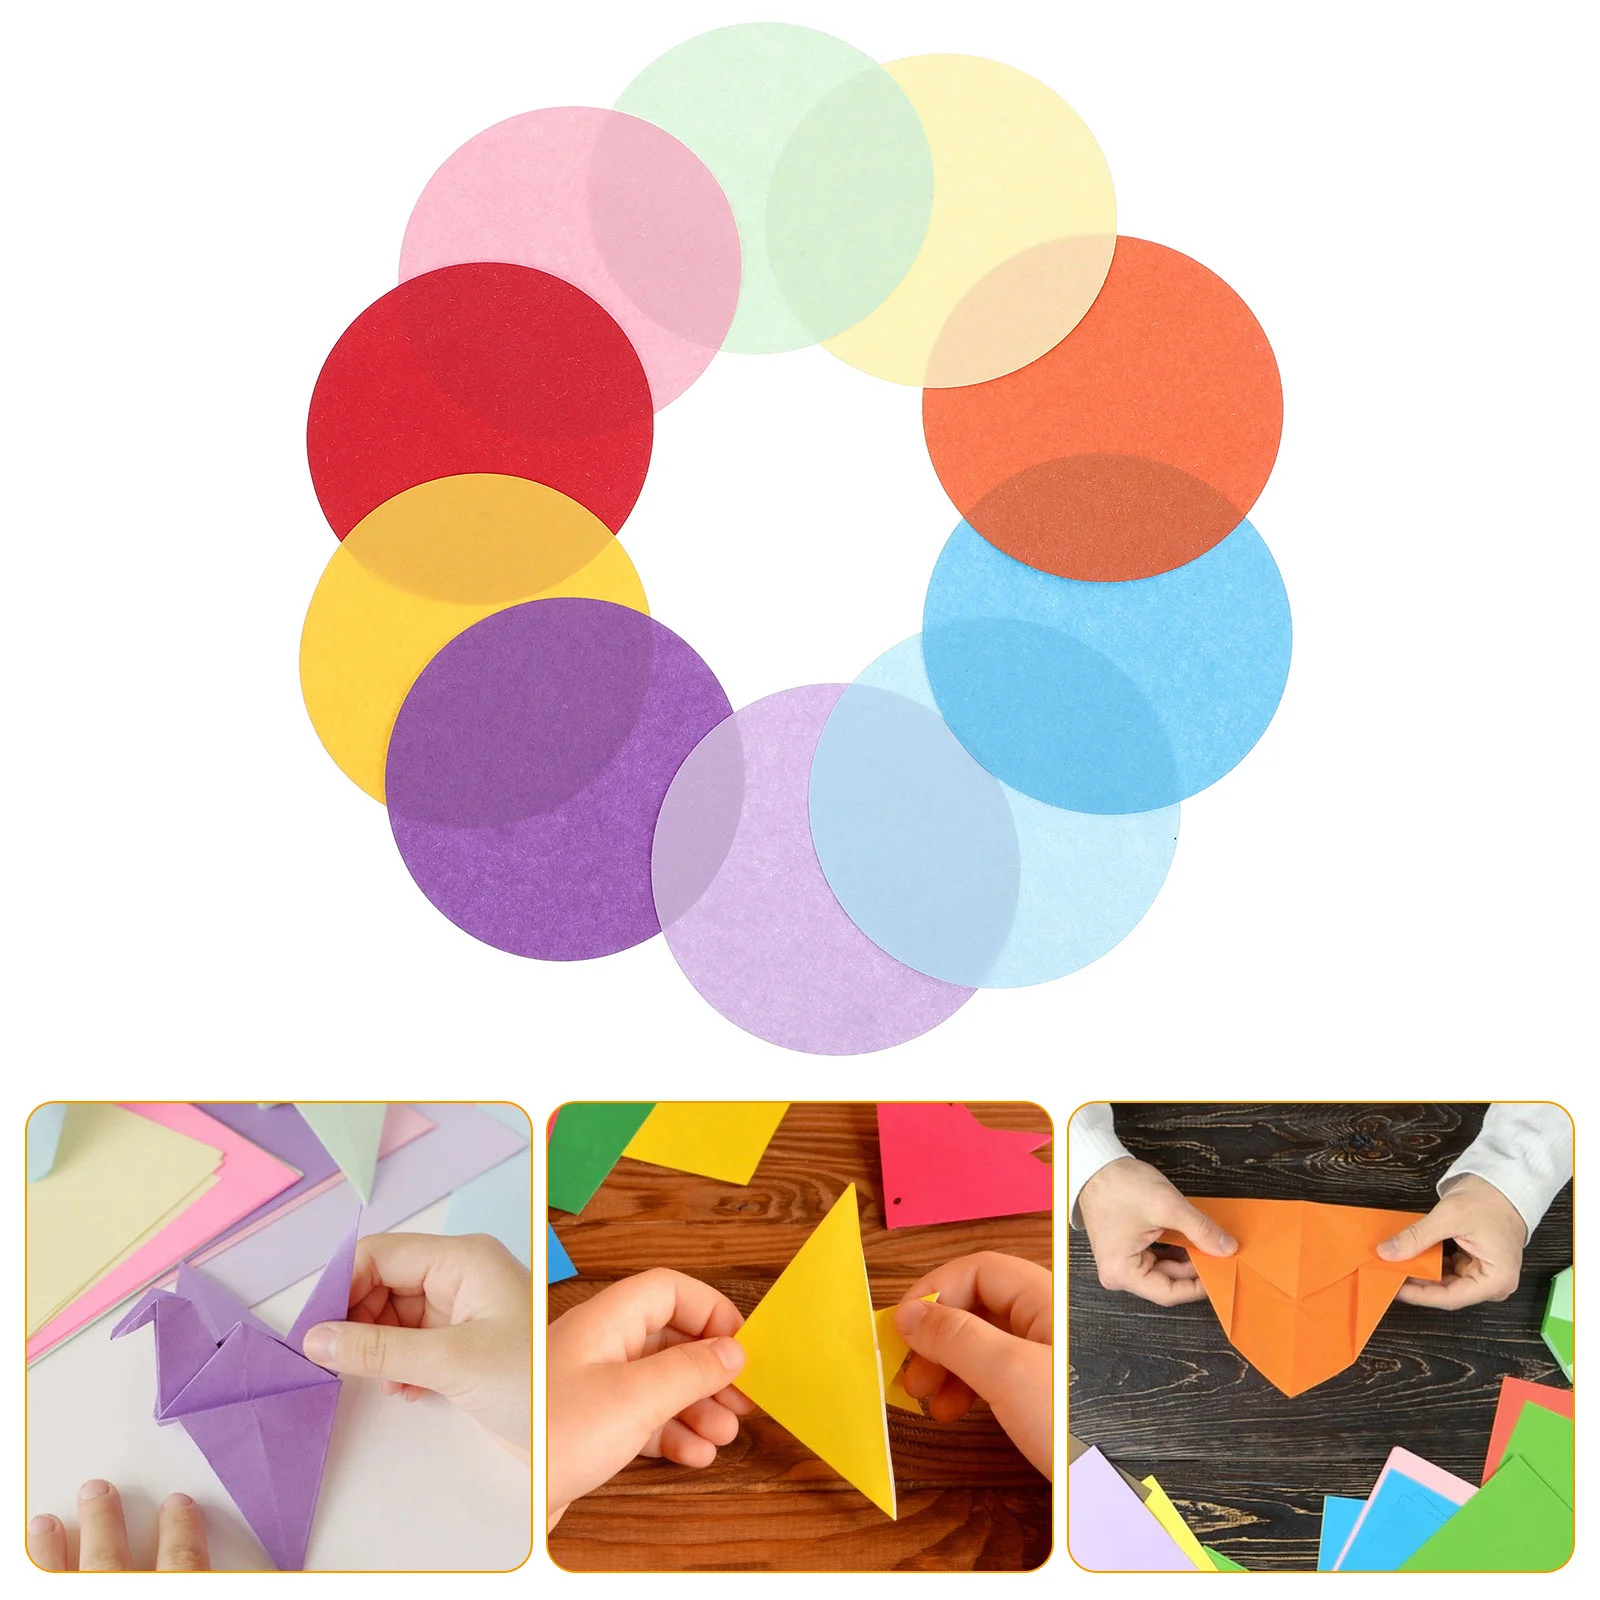 

200 Pcs Folding Paper Printing Bulk Craft Making Umbrellas Kids Round Exquisite Origami Painting Delicate Handicraft Child